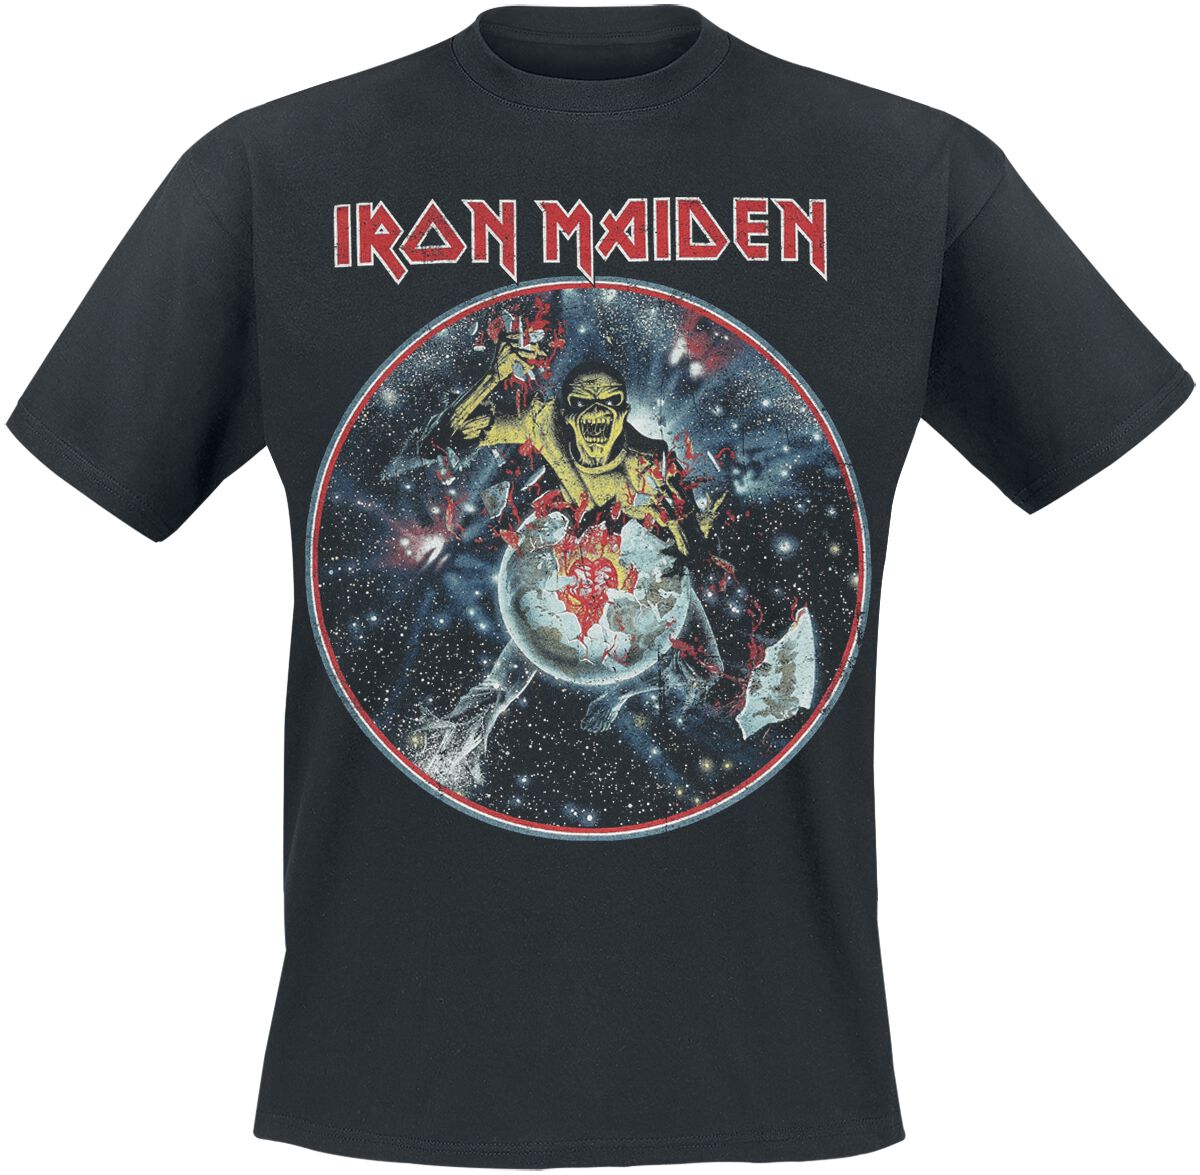 Iron Maiden T-Shirt - The Beast On The Run - World Peace Tour `83 - S bis 4XL - für Männer - Größe 4XL - schwarz  - Lizenziertes Merchandise!